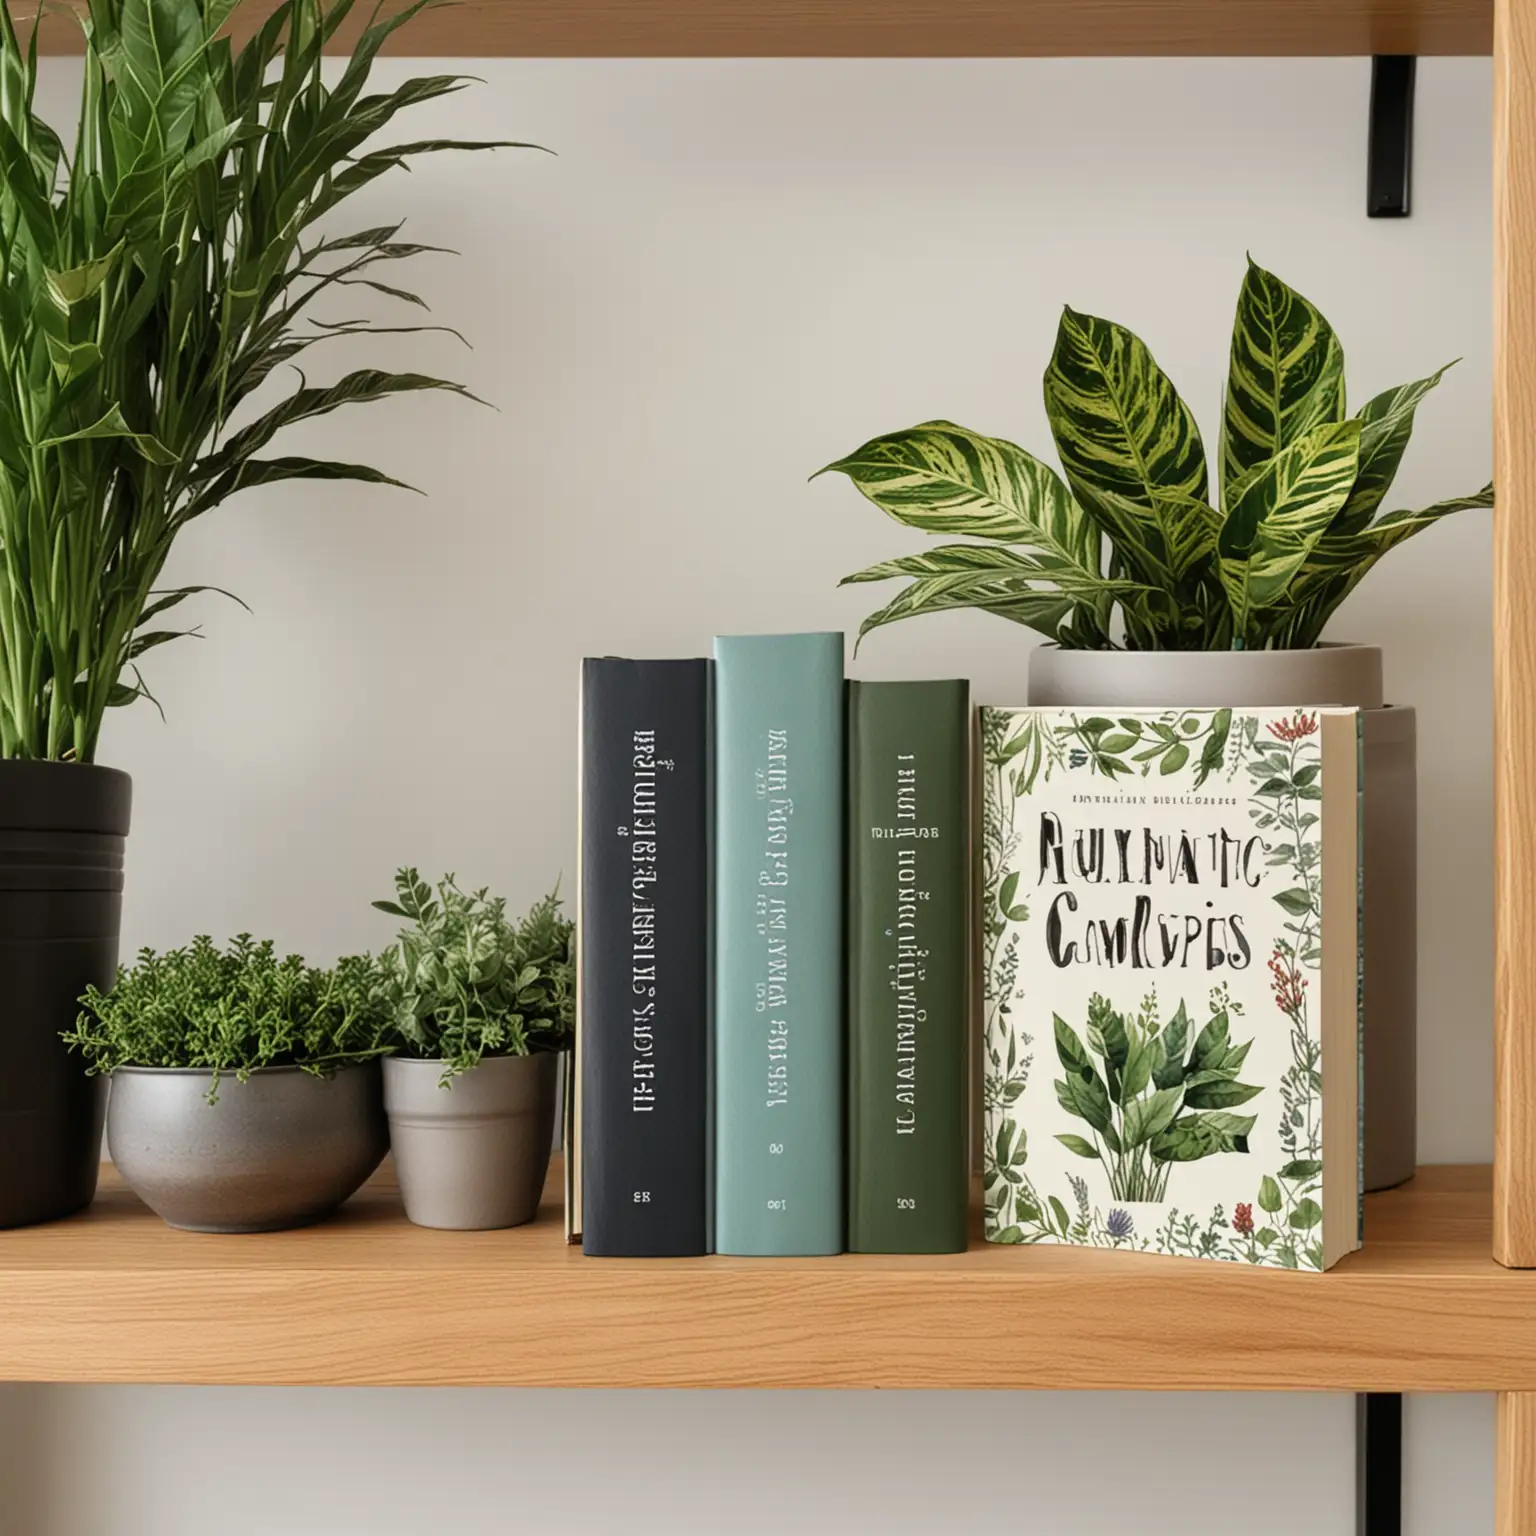 presentación de dos libros en un mueble decorado con plantas